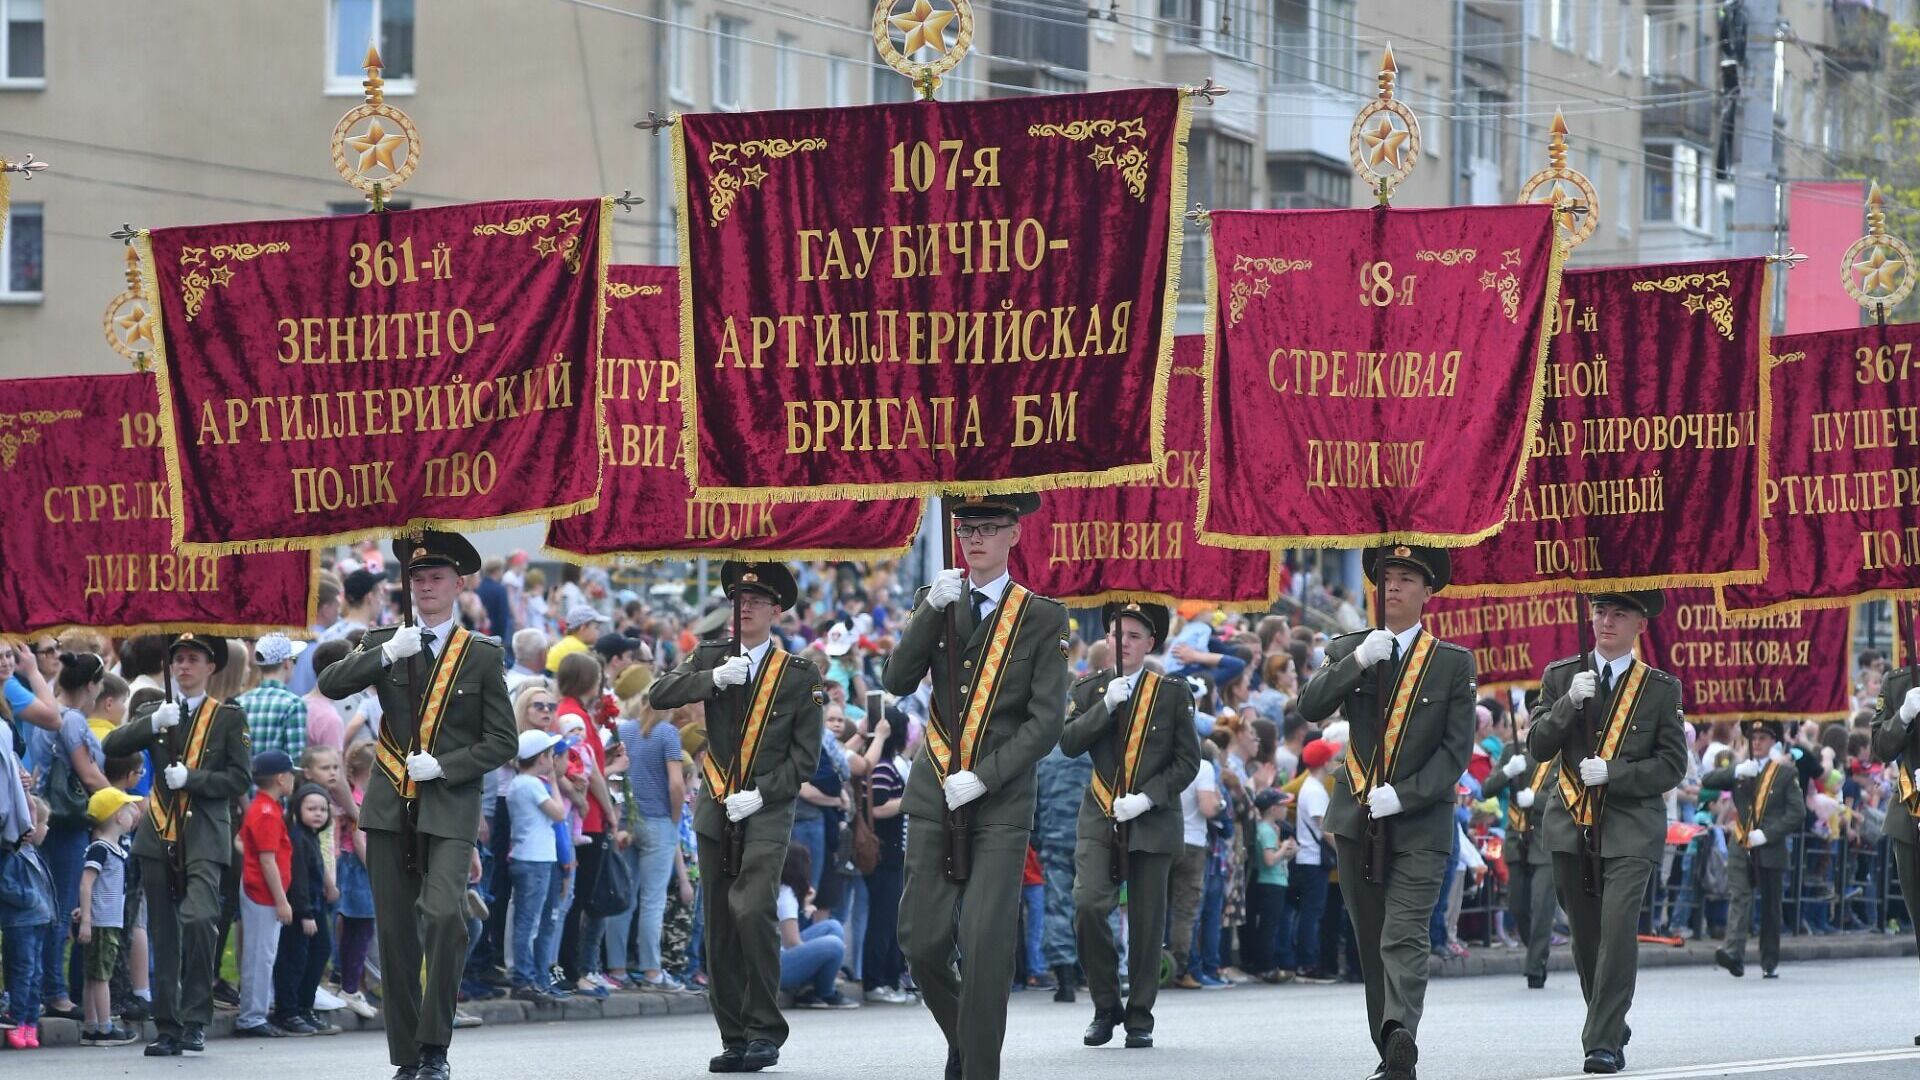 фото из архива редакции, парад Победы в Ижевске в 2019 году